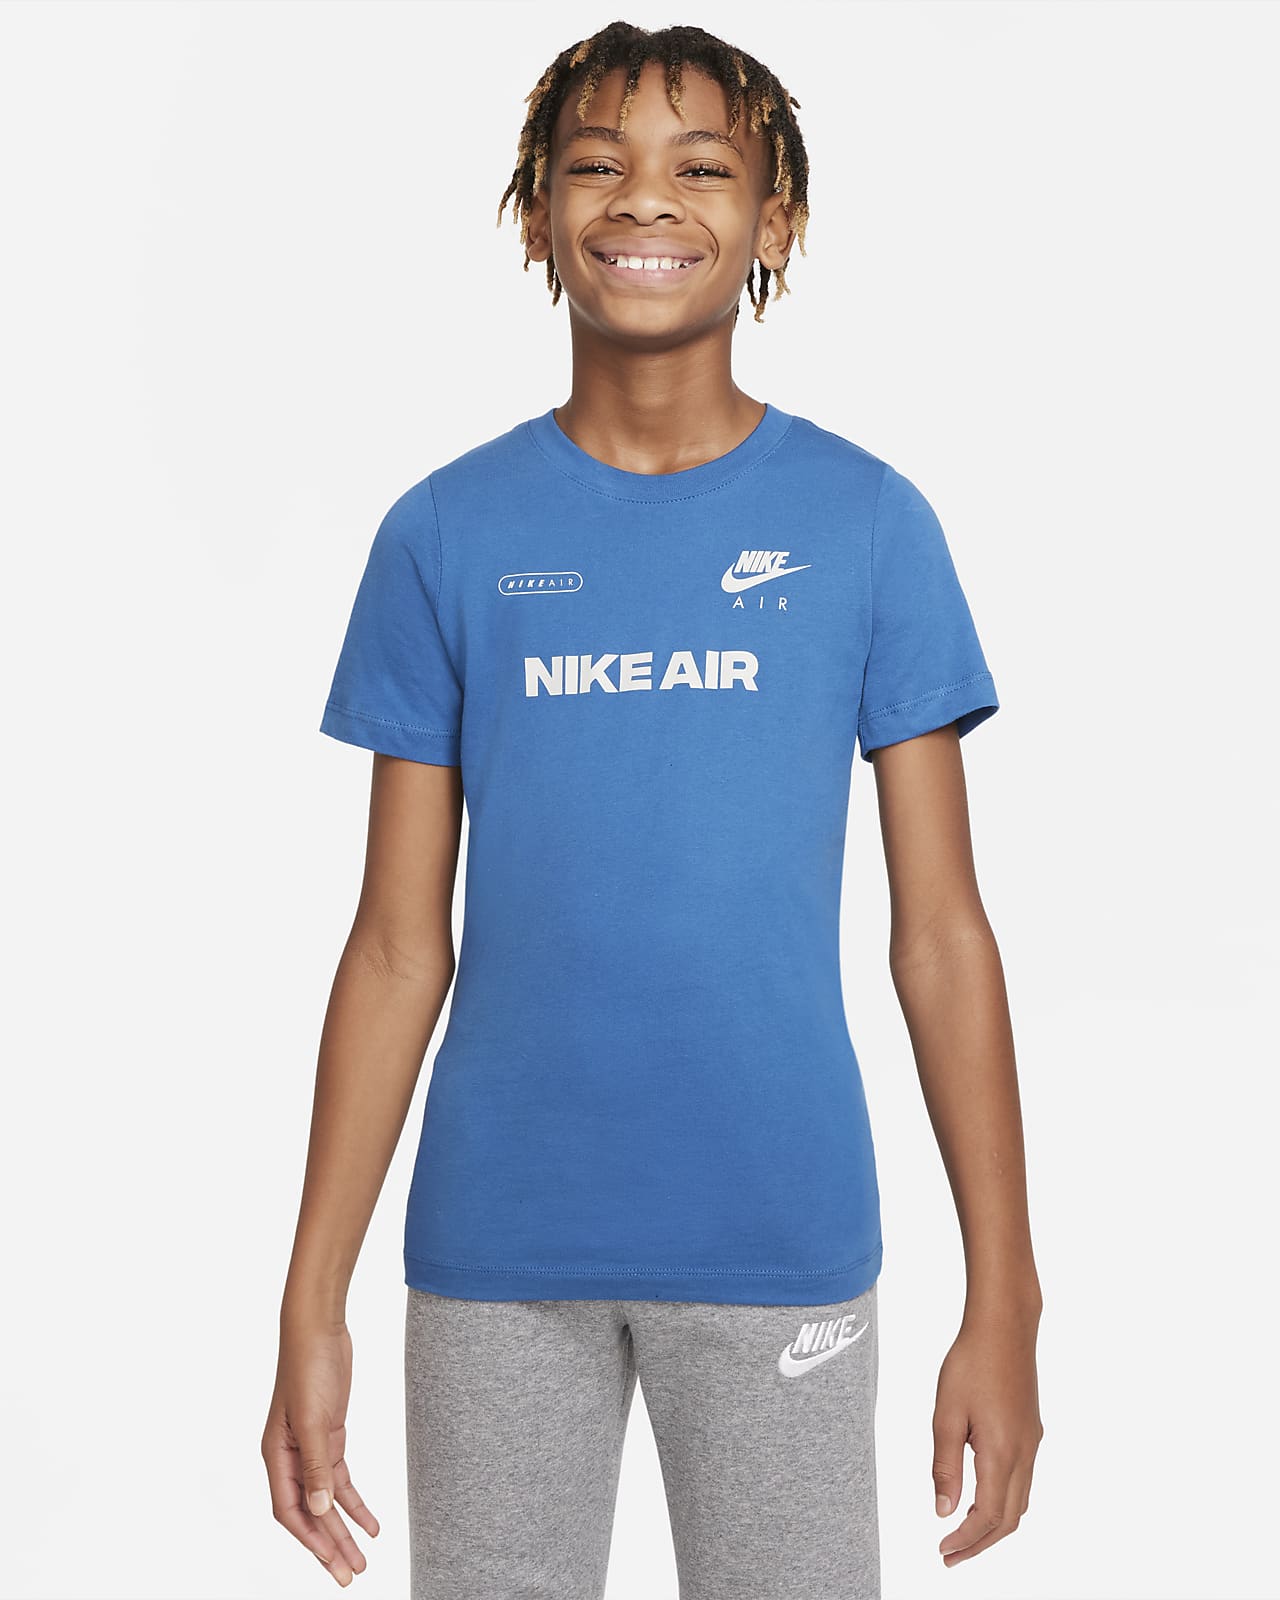 Футболка для мальчиков школьного возраста Nike Air